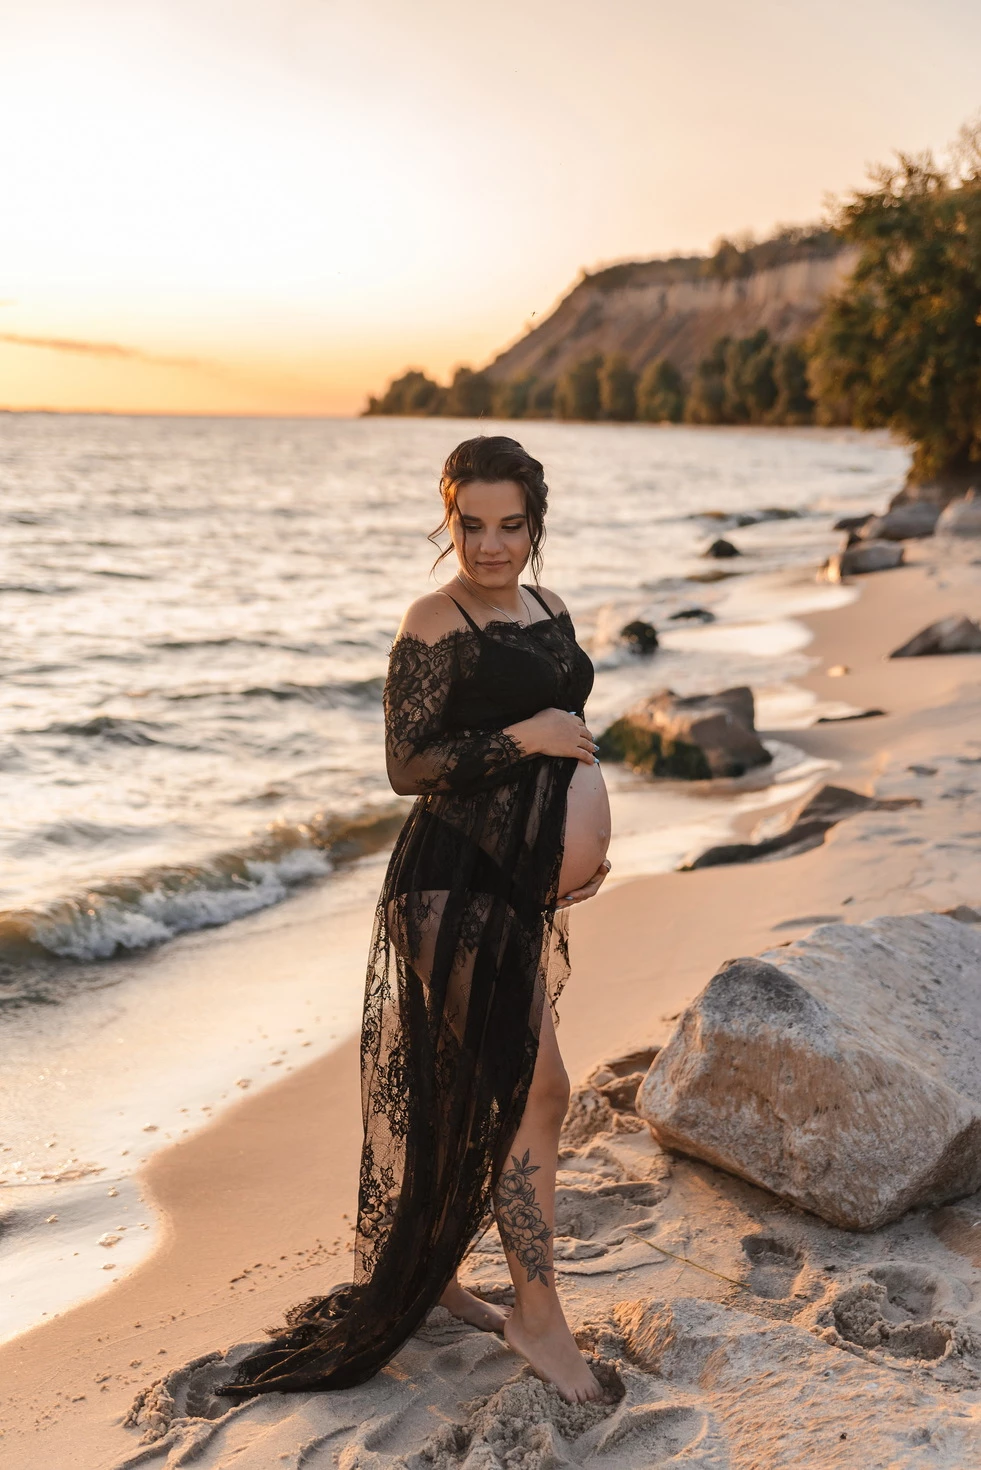 Вагітна жінка стоїть на пляжі в чорному мереживному платті, дивлячись на захід сонця.